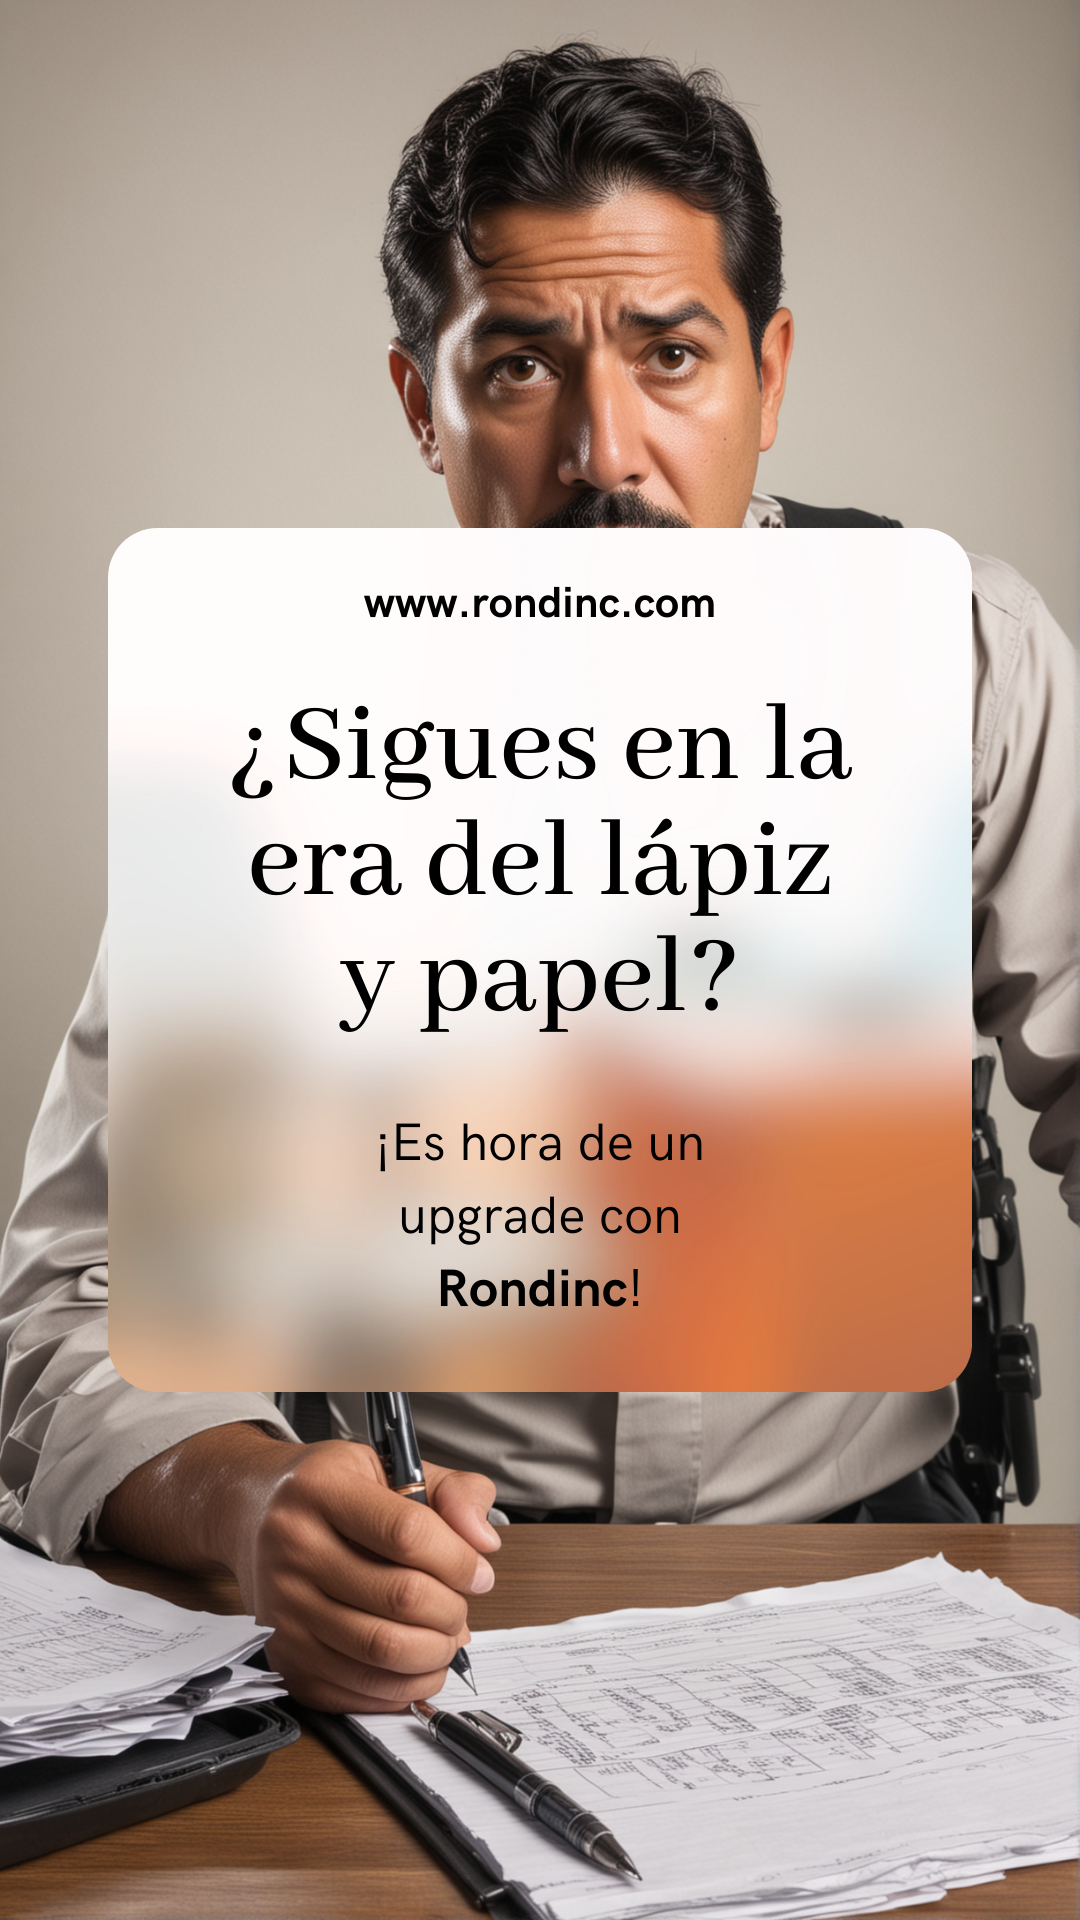 Rondinc - Solución de Rondinero Electrónico para Seguridad